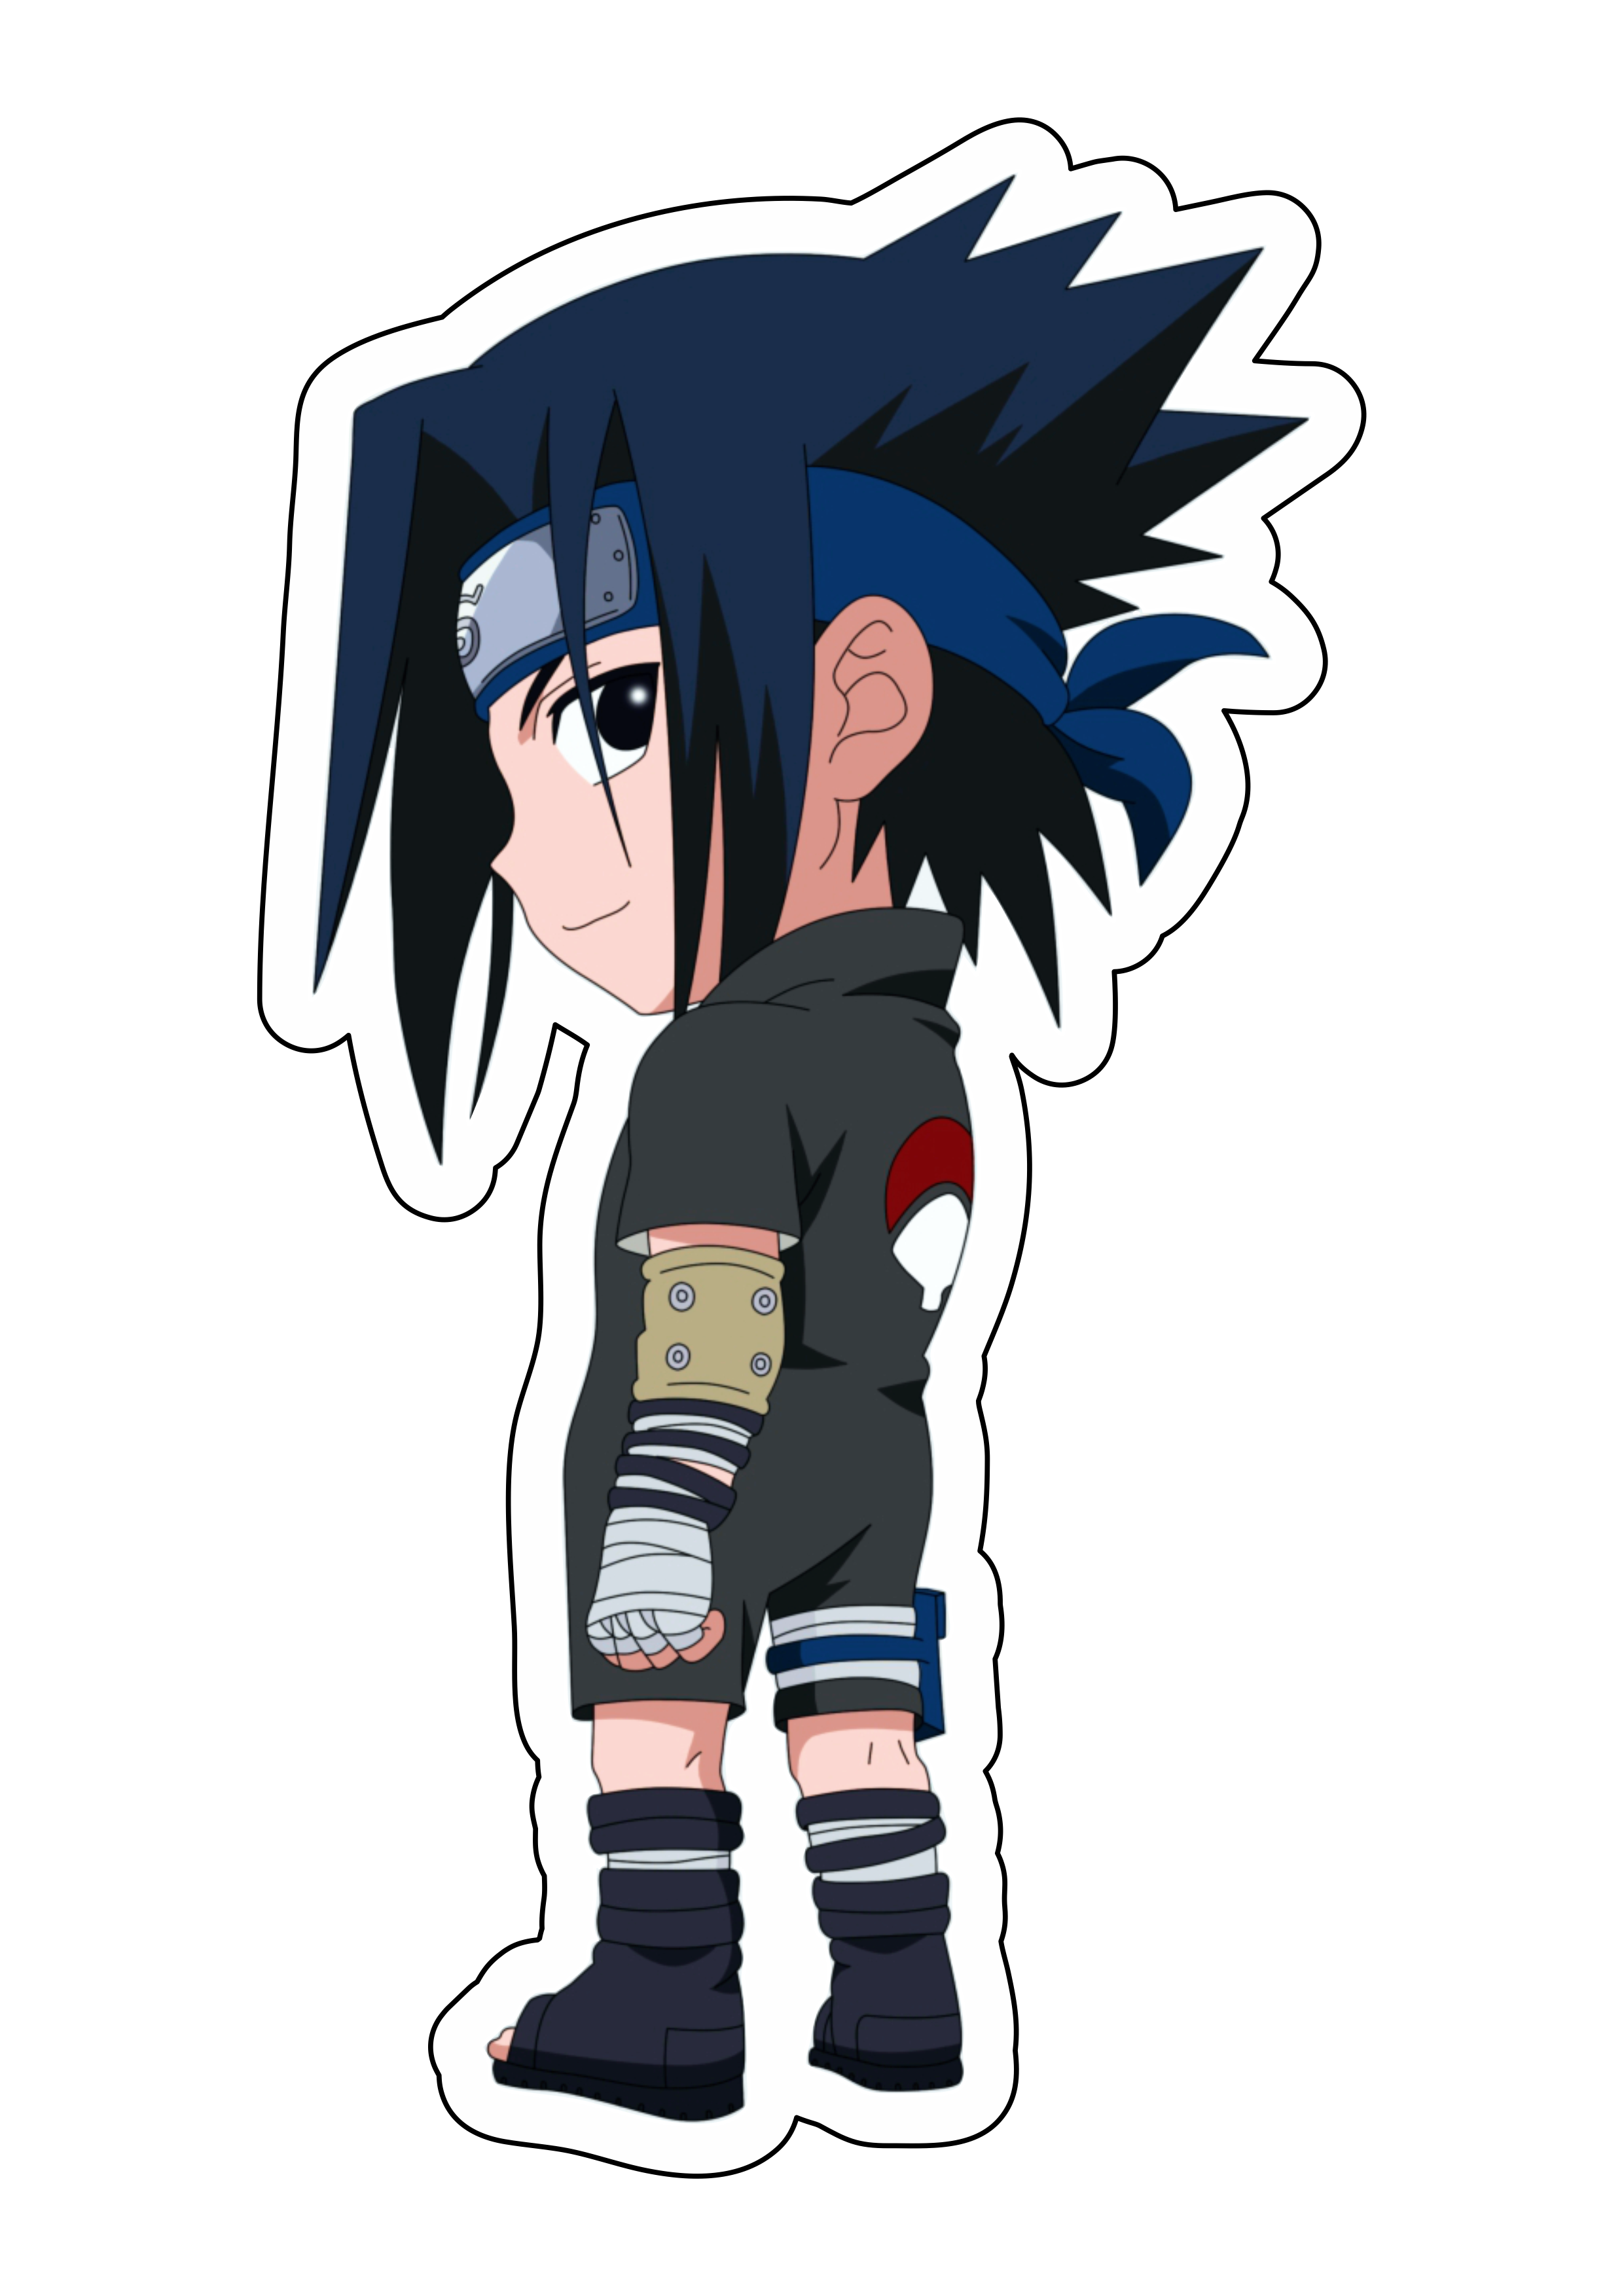 Naruto shippuden cute chibi Sasuke desenho infantil anime fundo transparente com contorno png